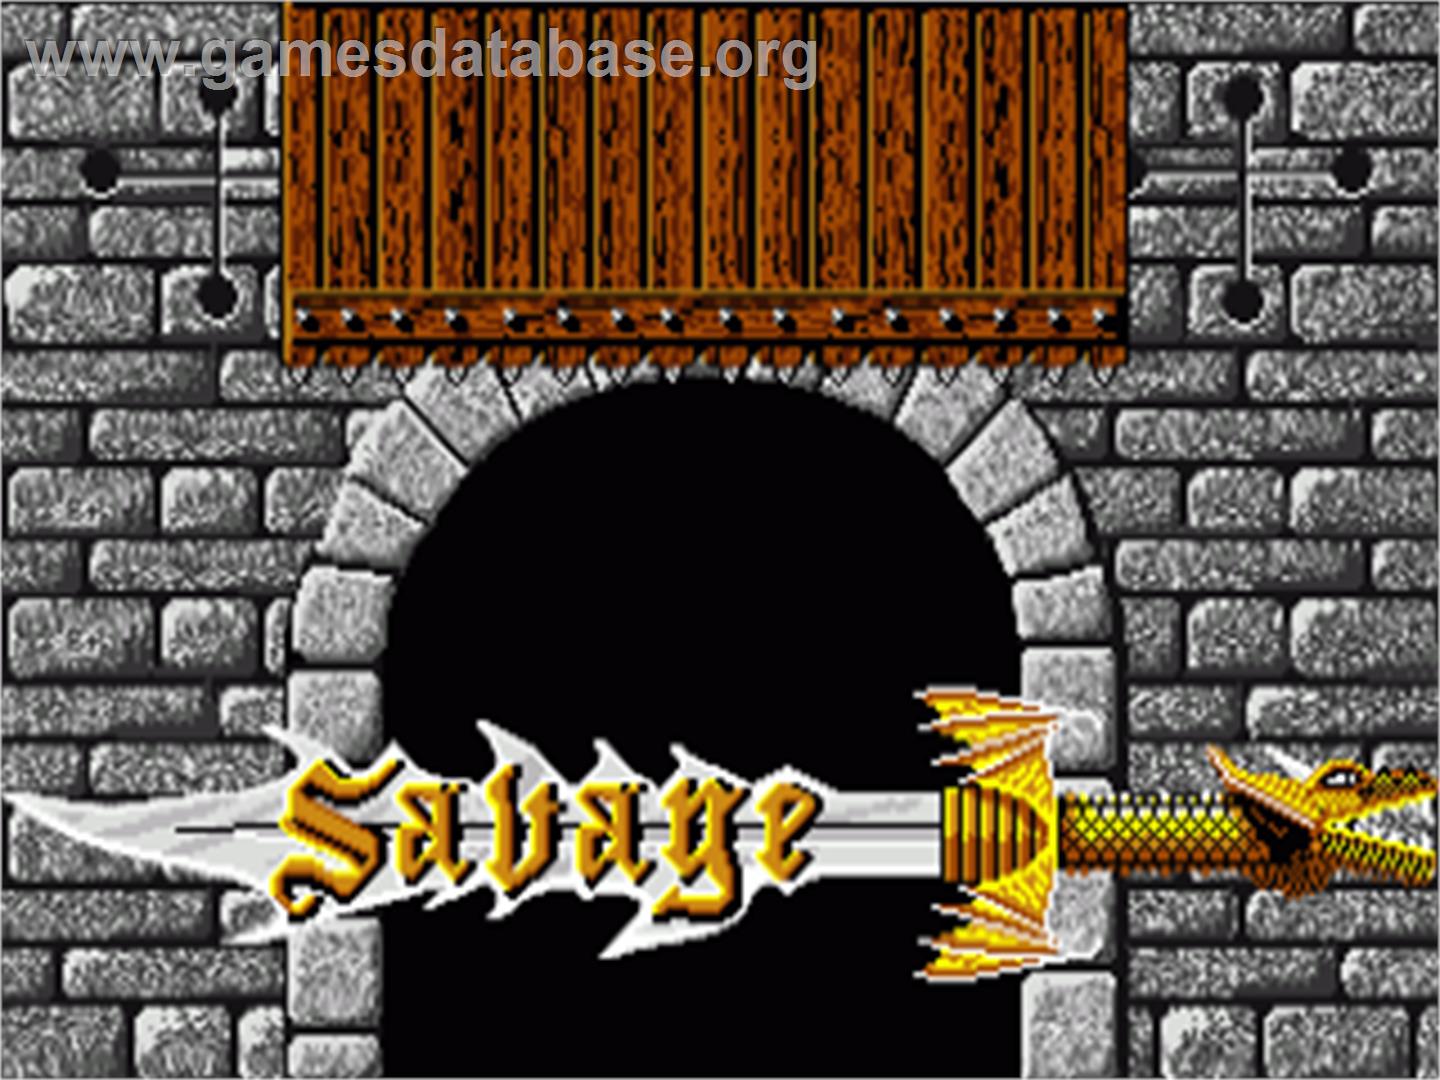 Savage - Commodore Amiga - Artwork - Title Screen